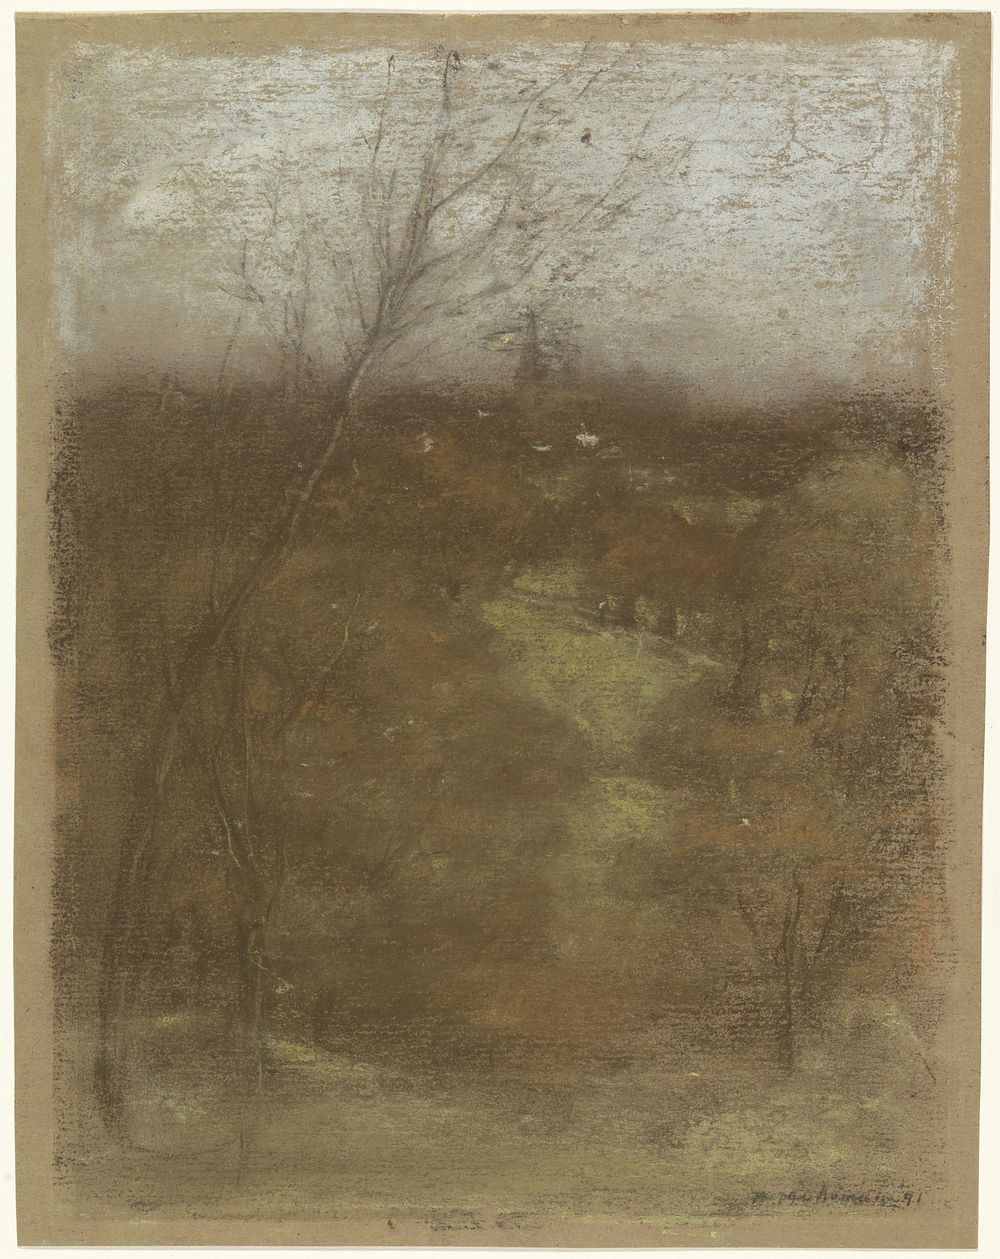 Gezicht op een dal met een beekje (1891) by Henry Muhrmann